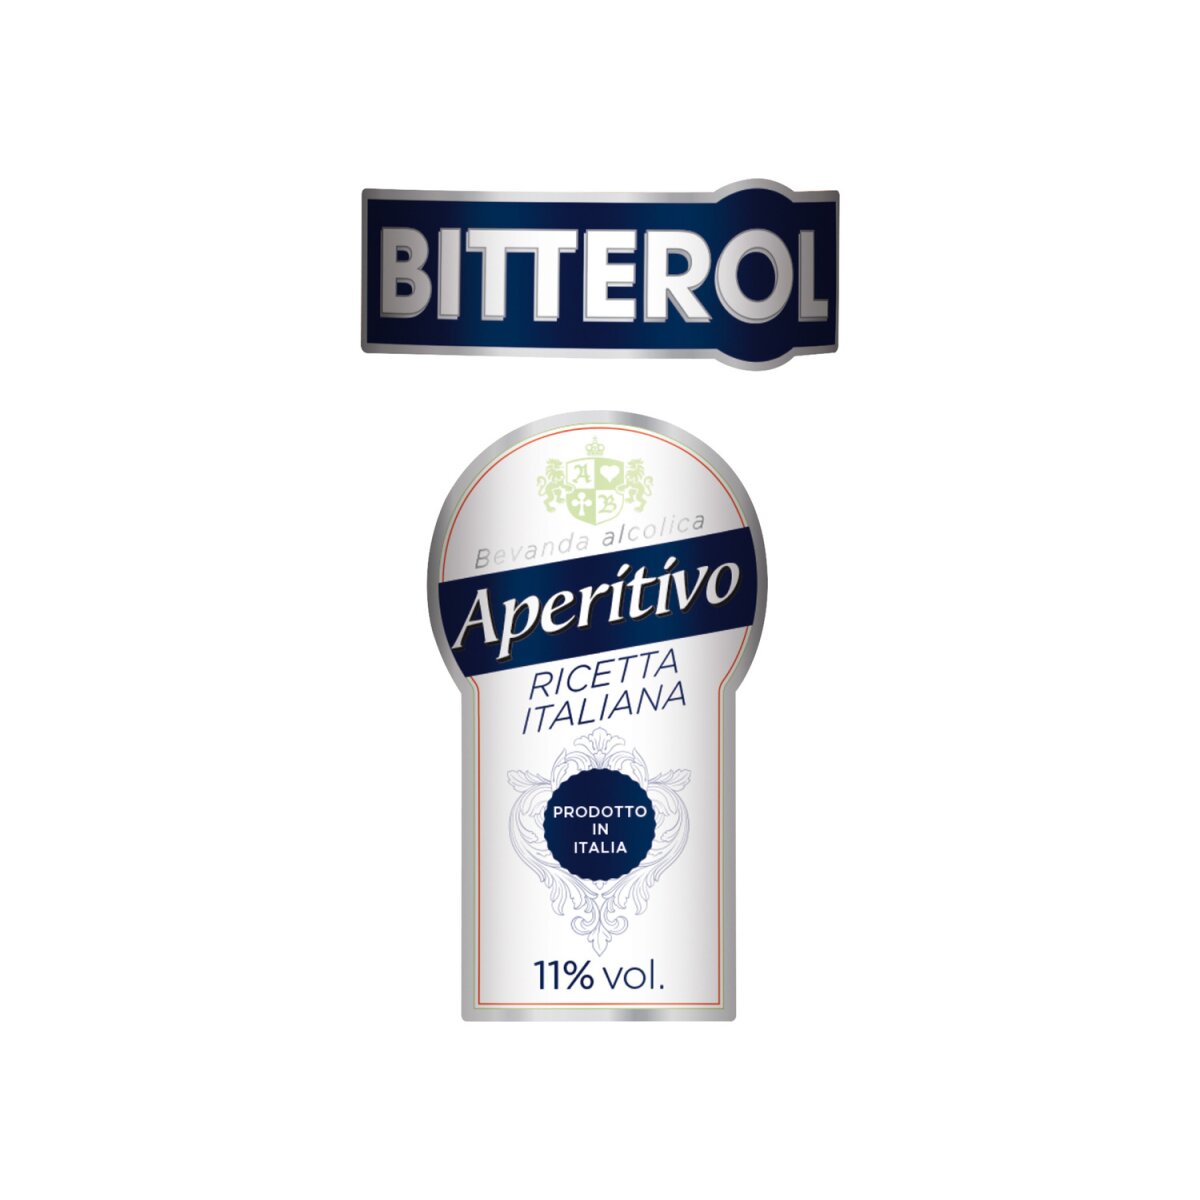 BITTEROL Aperitivo 11% 3,99 Vol, Italiano €